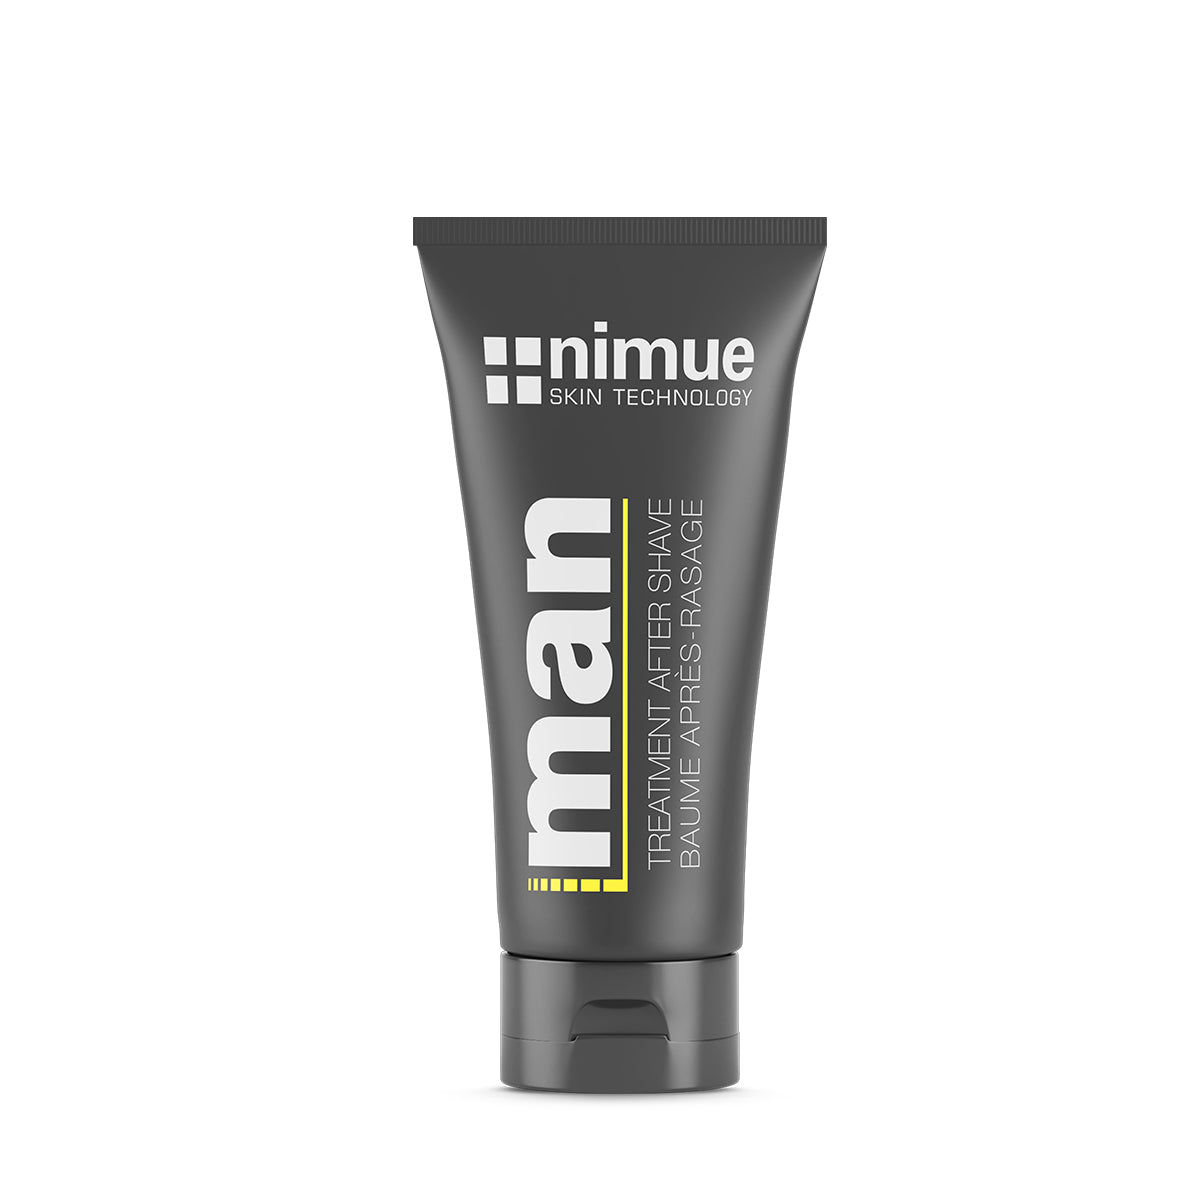 Nimue Men’s Treatment After Shave